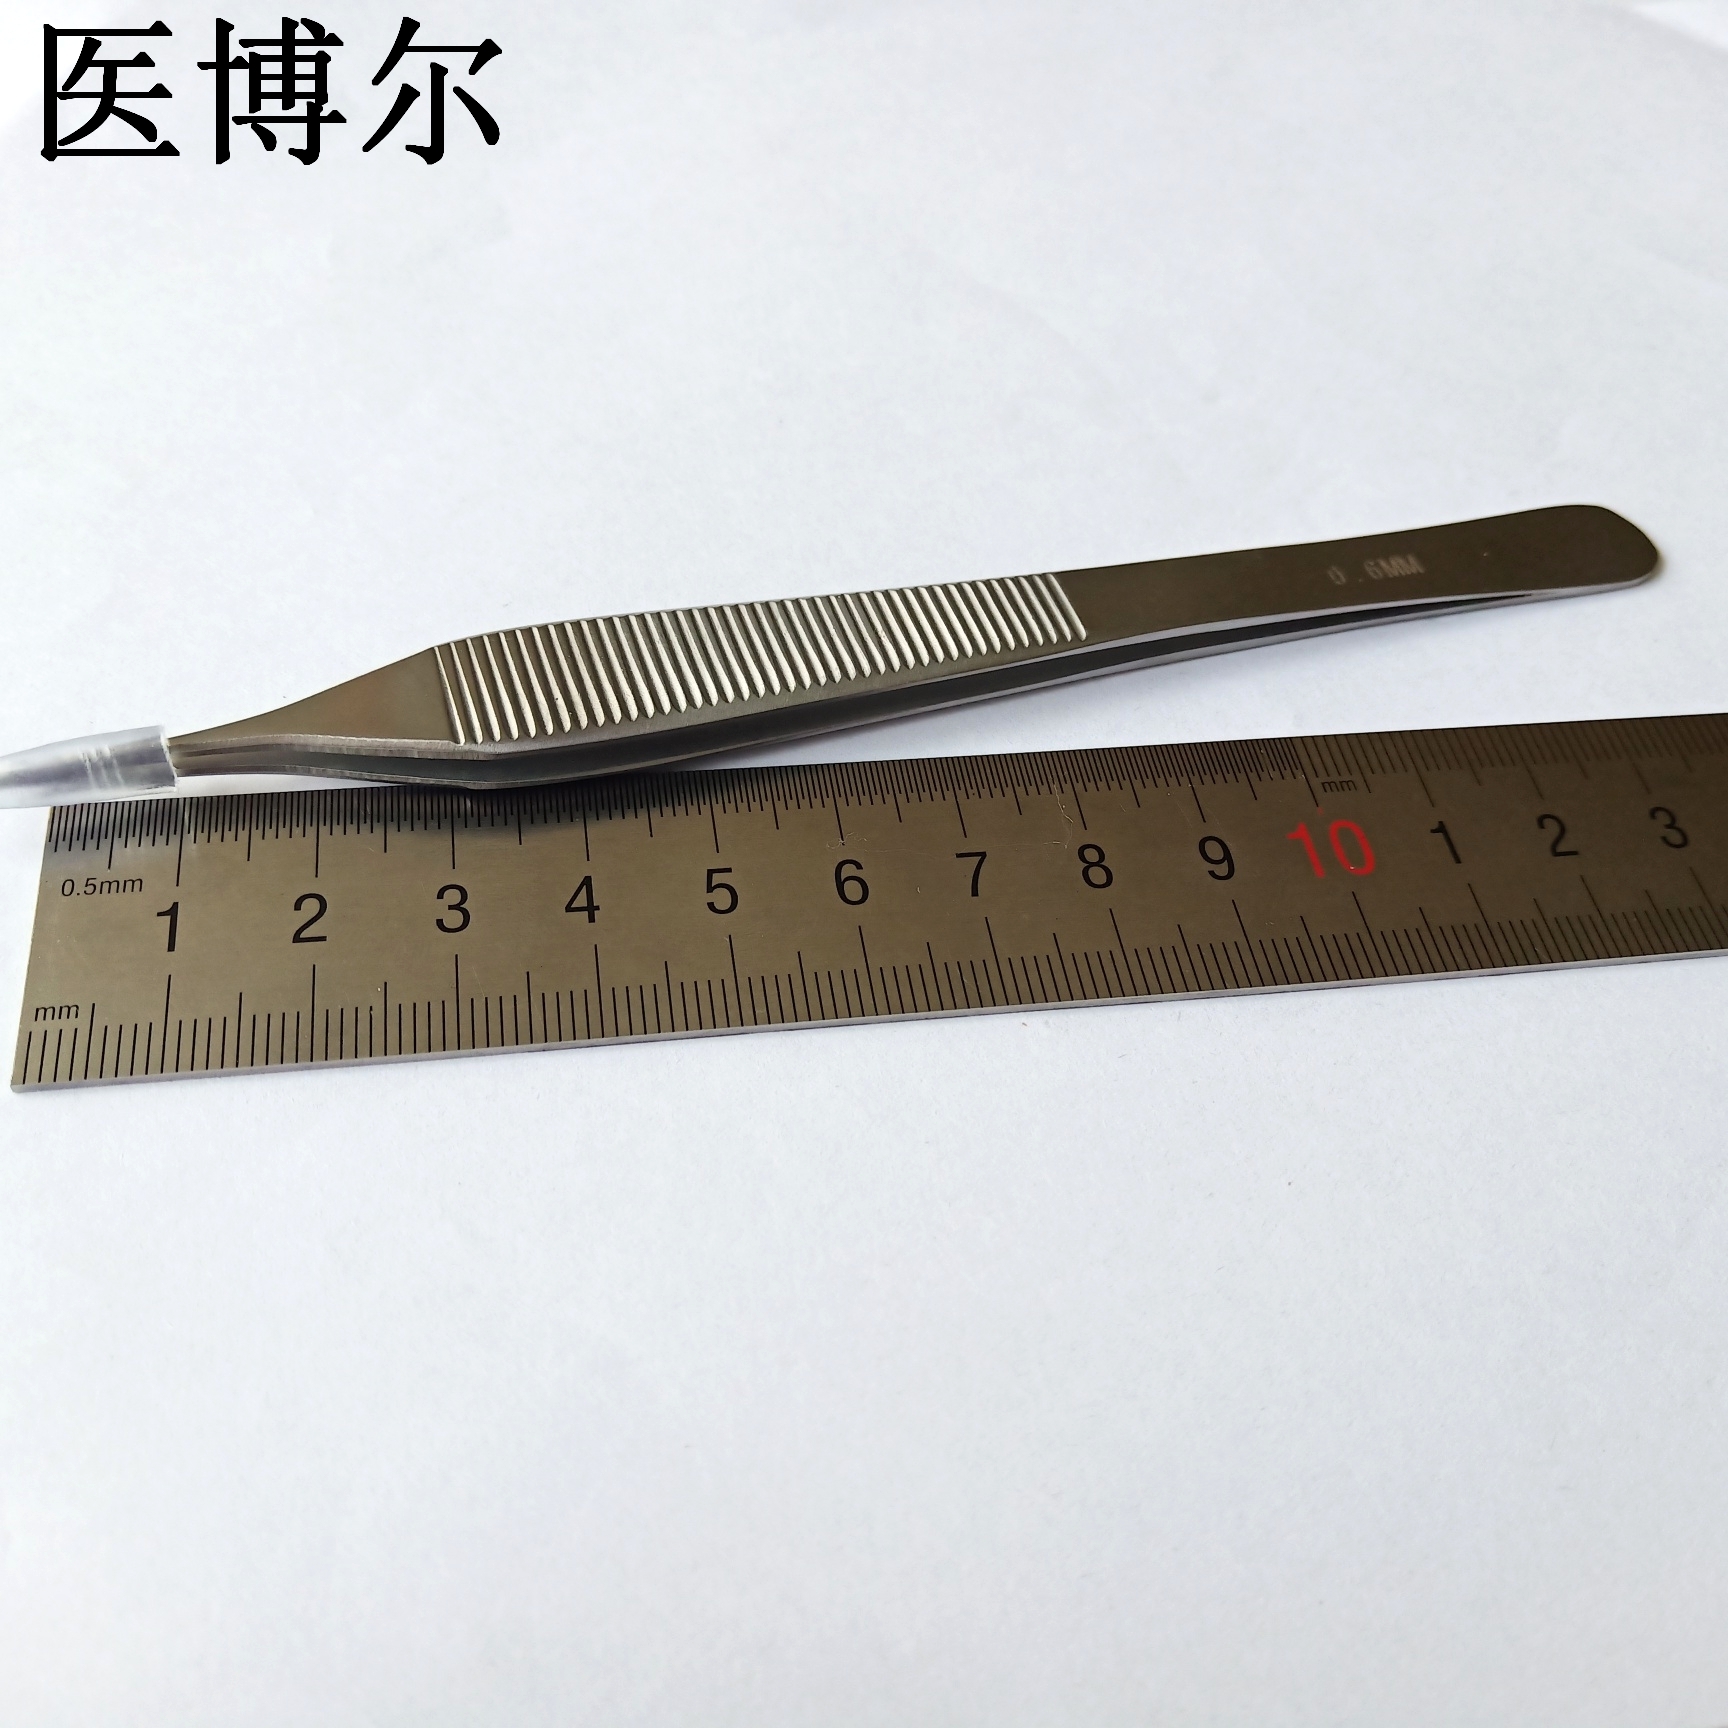 14cm整形镊0 (4)_看图王.jpg